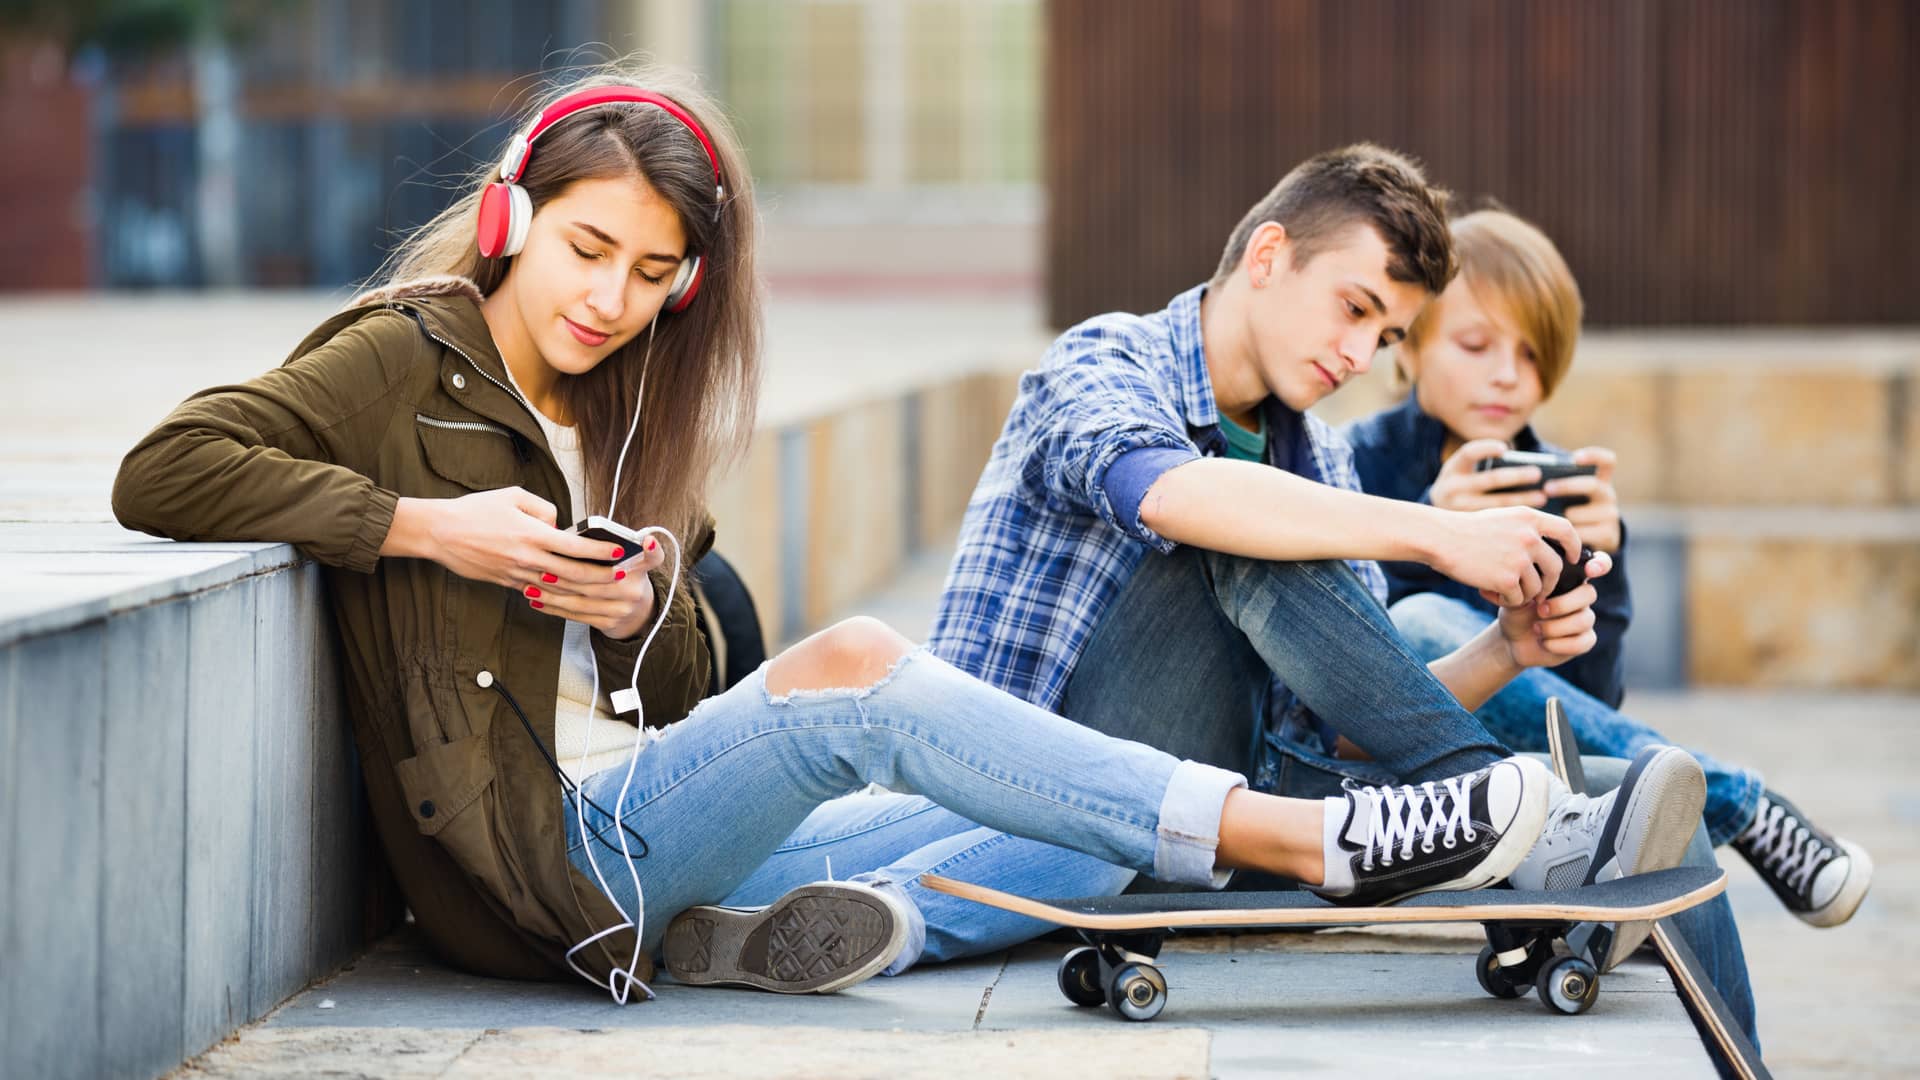 Jovenes conectados a internet ilimitado en sus lineas att de sus smartphones